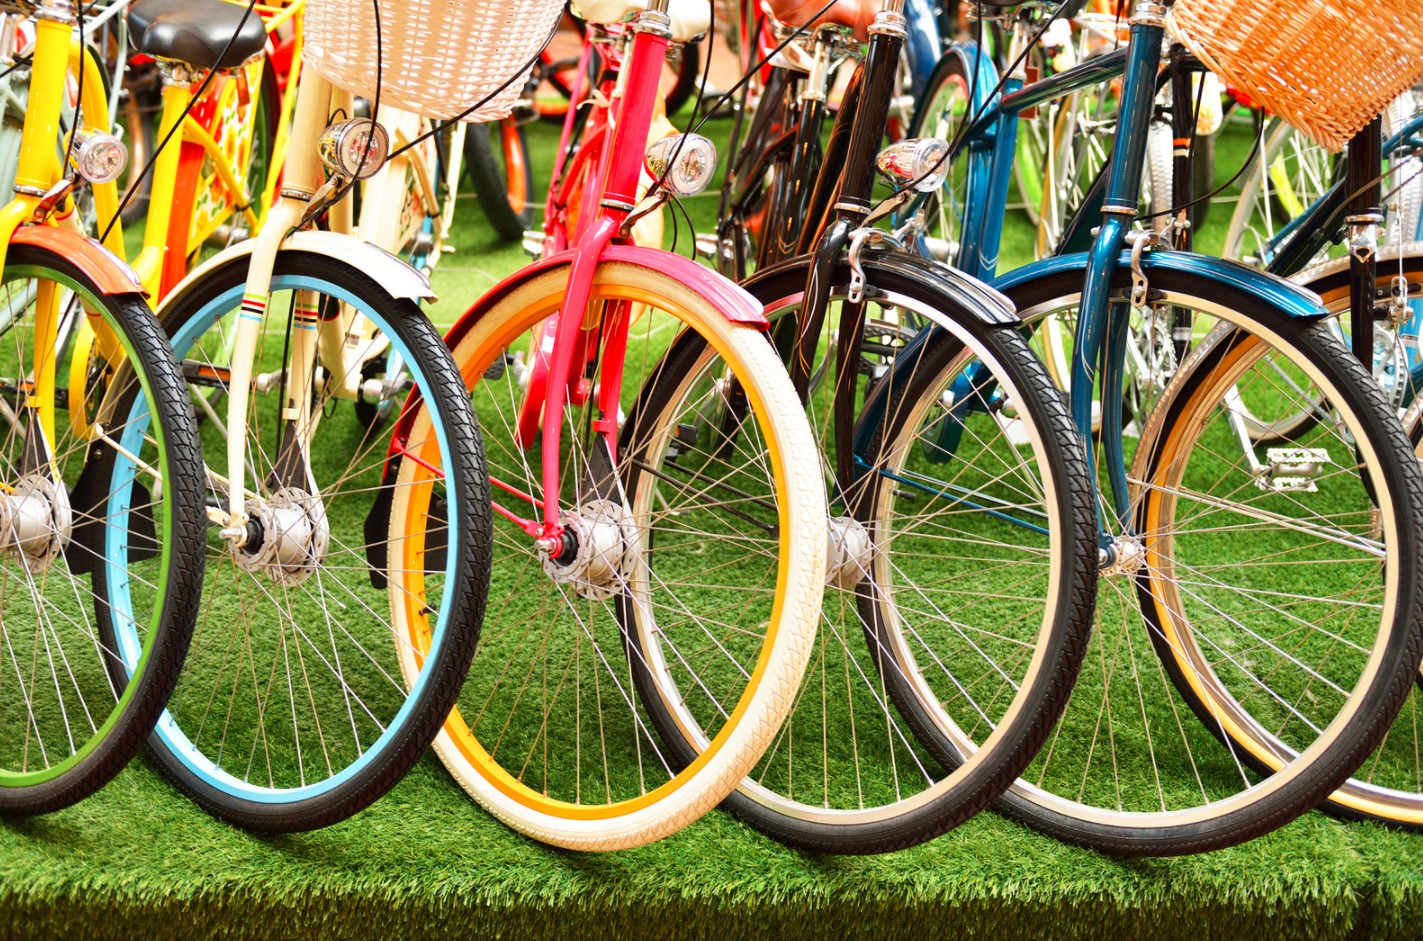 1 мая с 13:00 до 15:00 состоится праздник открытия сезона велосипедистов